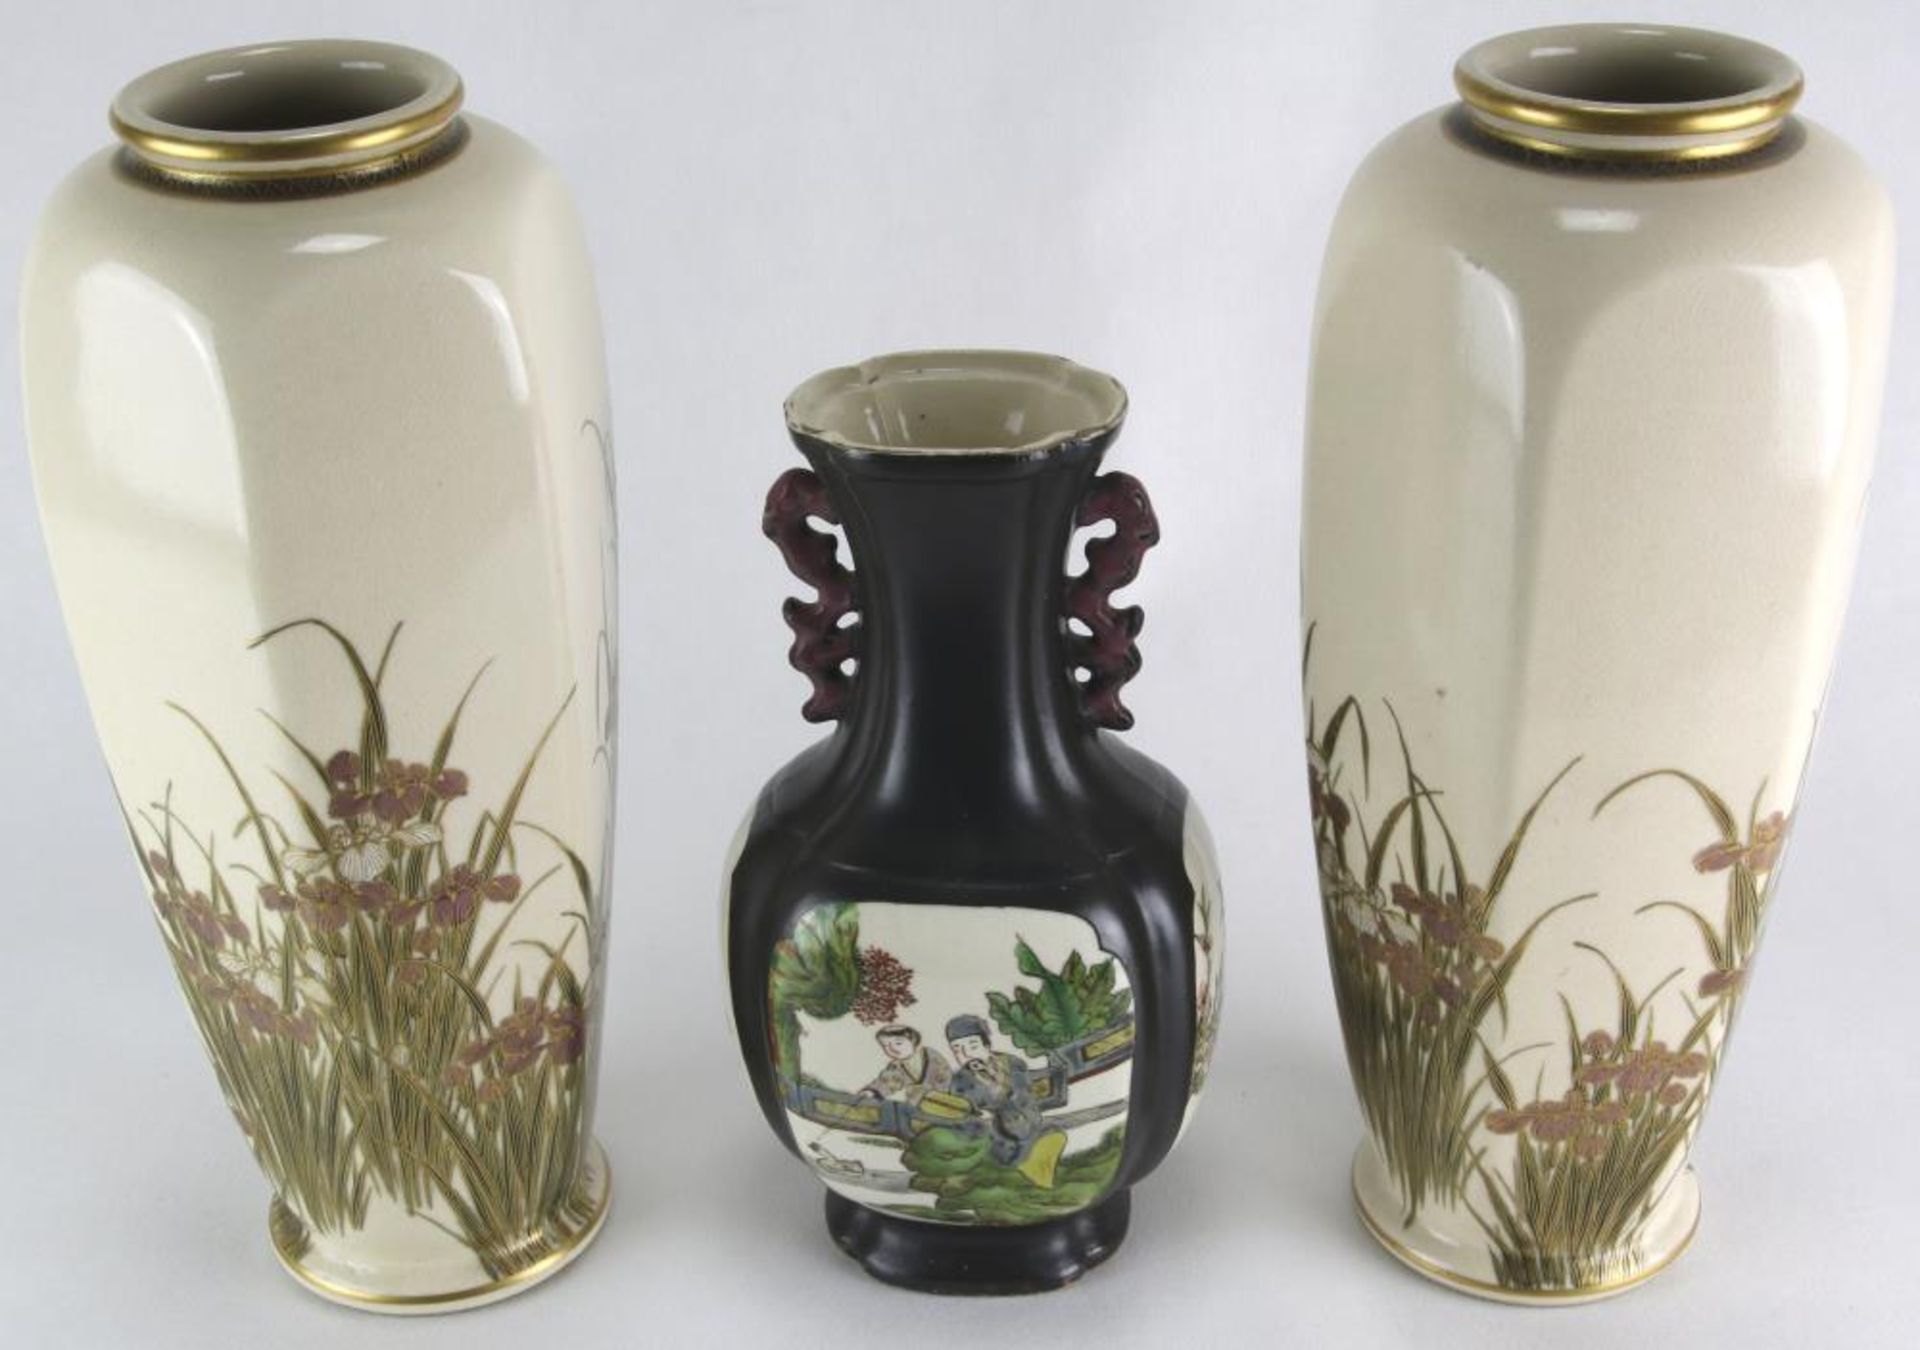 Drei Vasen. China, Kaiserzeit um 1900. Ein Paar und eine einzelne. Keramik mit reliefiertem - Bild 2 aus 3